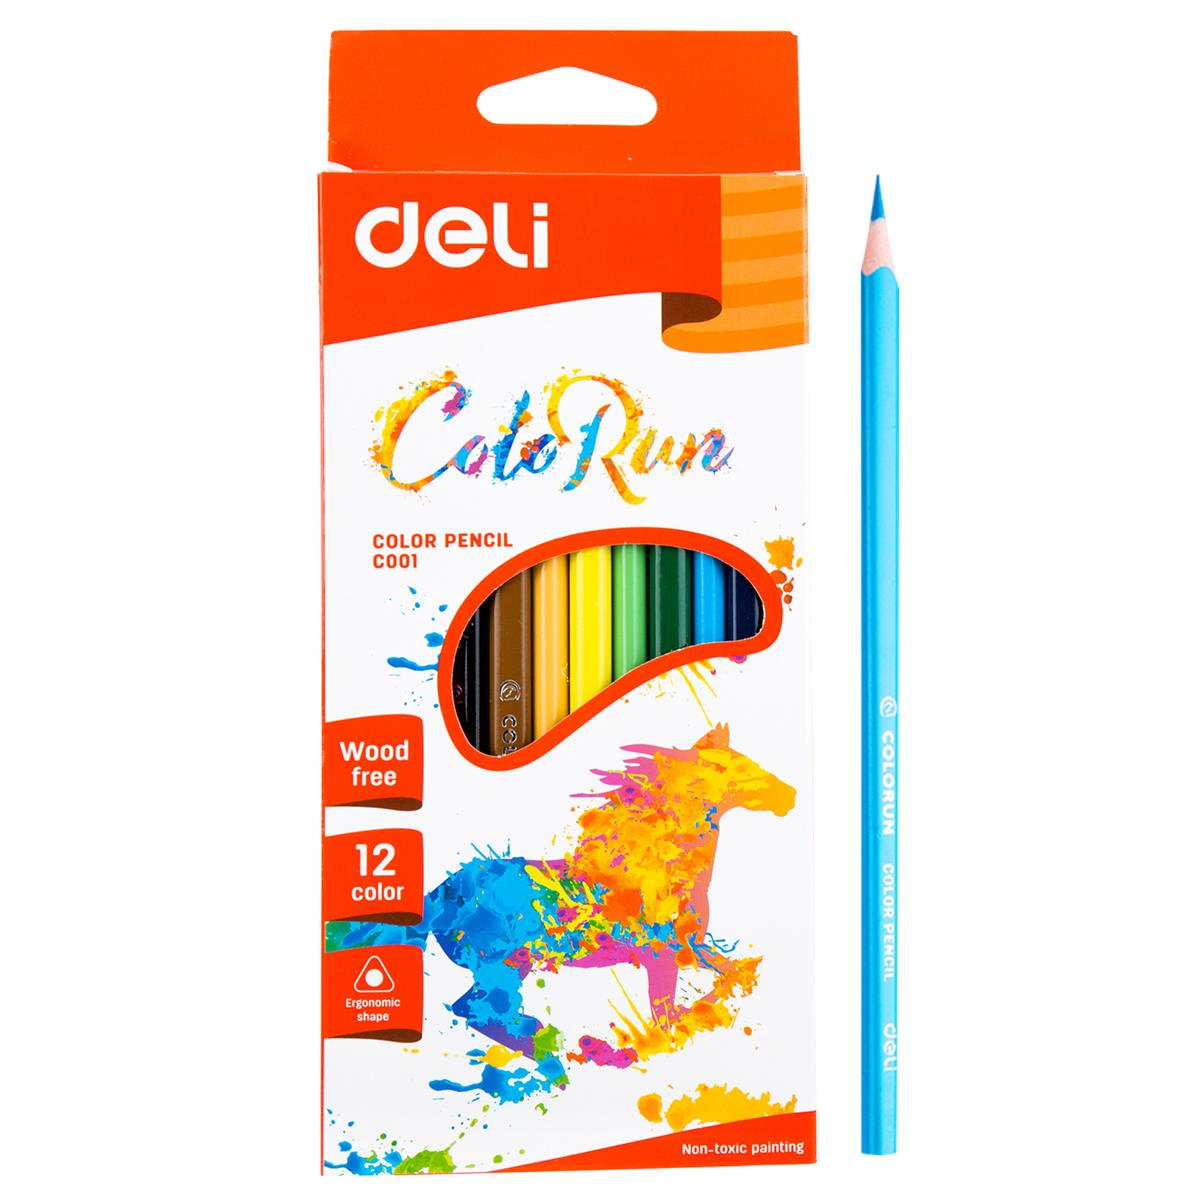 Deli Colorun Pencil Color